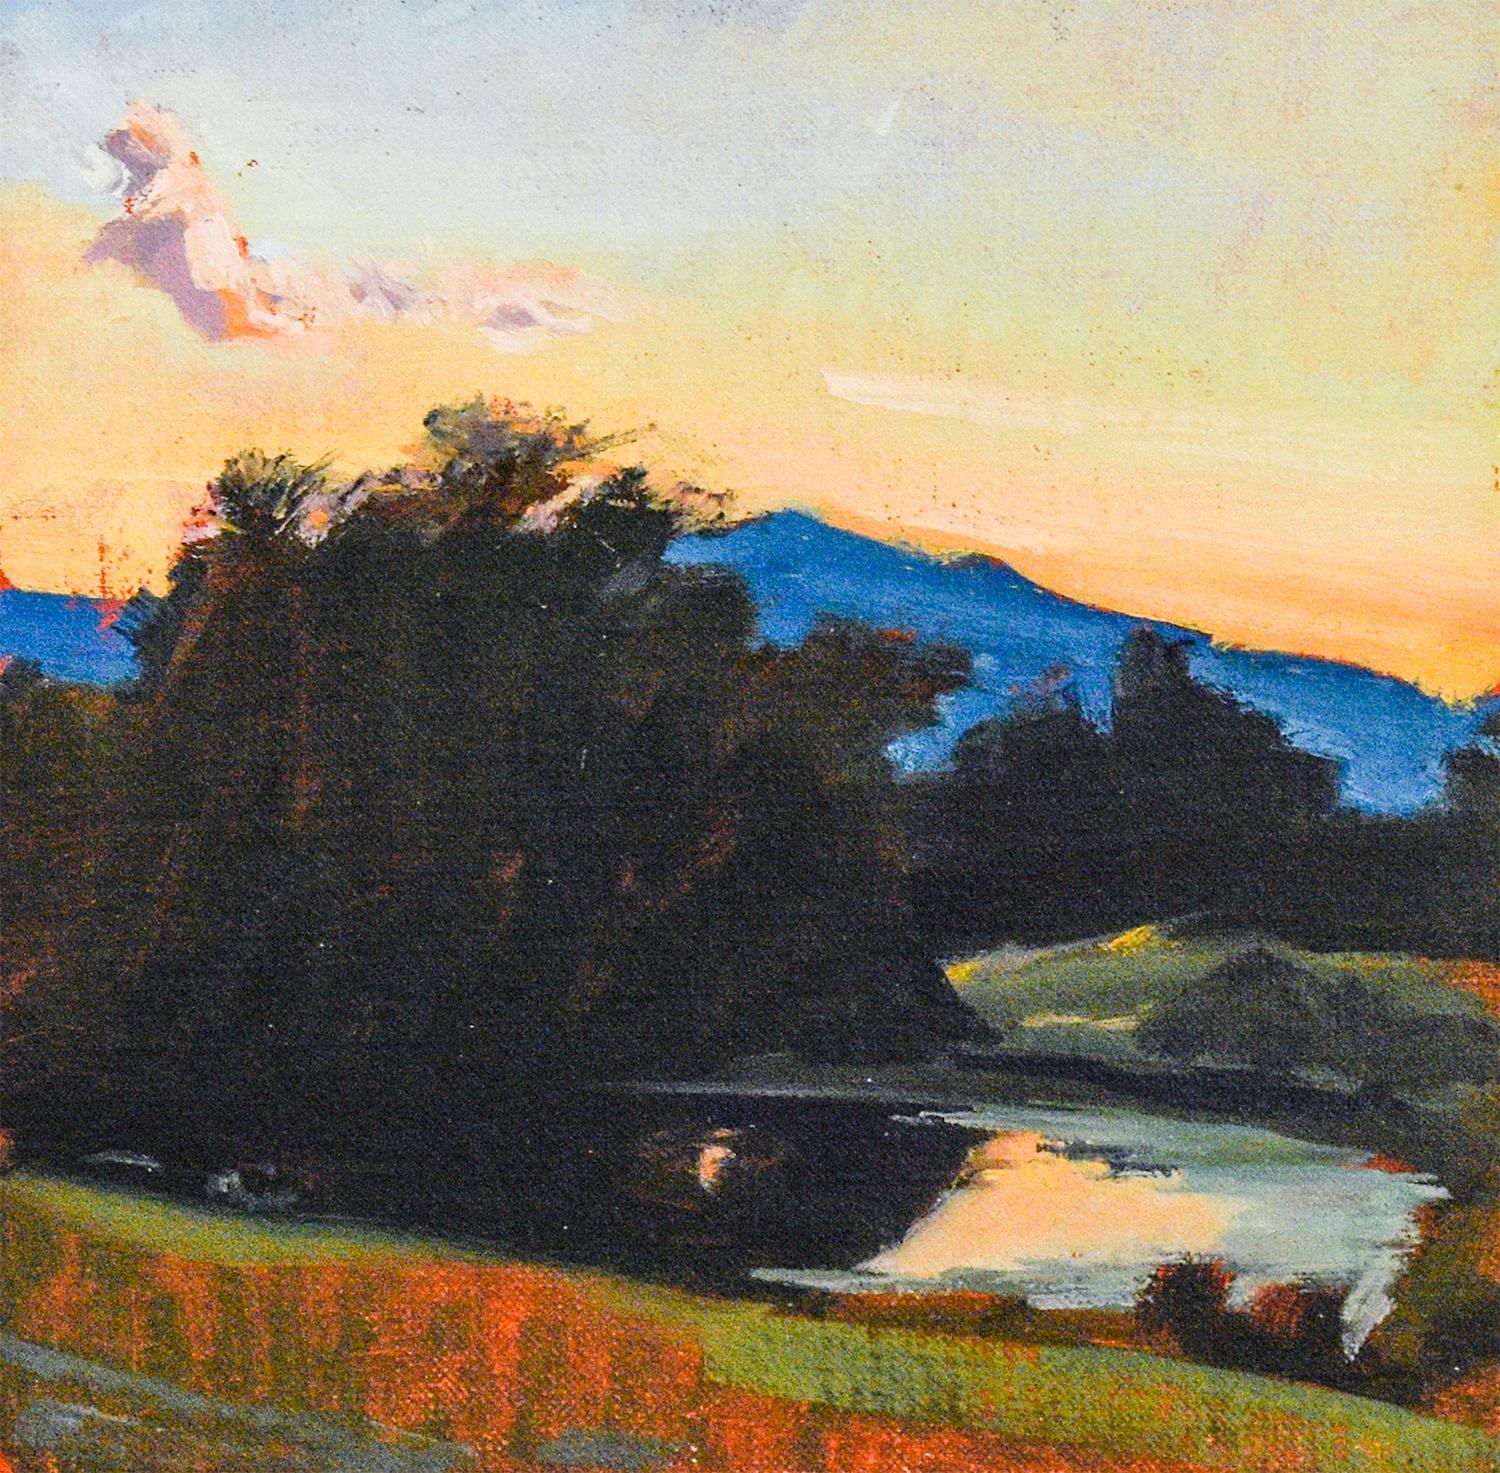 Herbstlandschaft: Gerahmtes Ölgemälde En Plein Air von Hudson ValIey, Impressionist – Painting von John Kelly